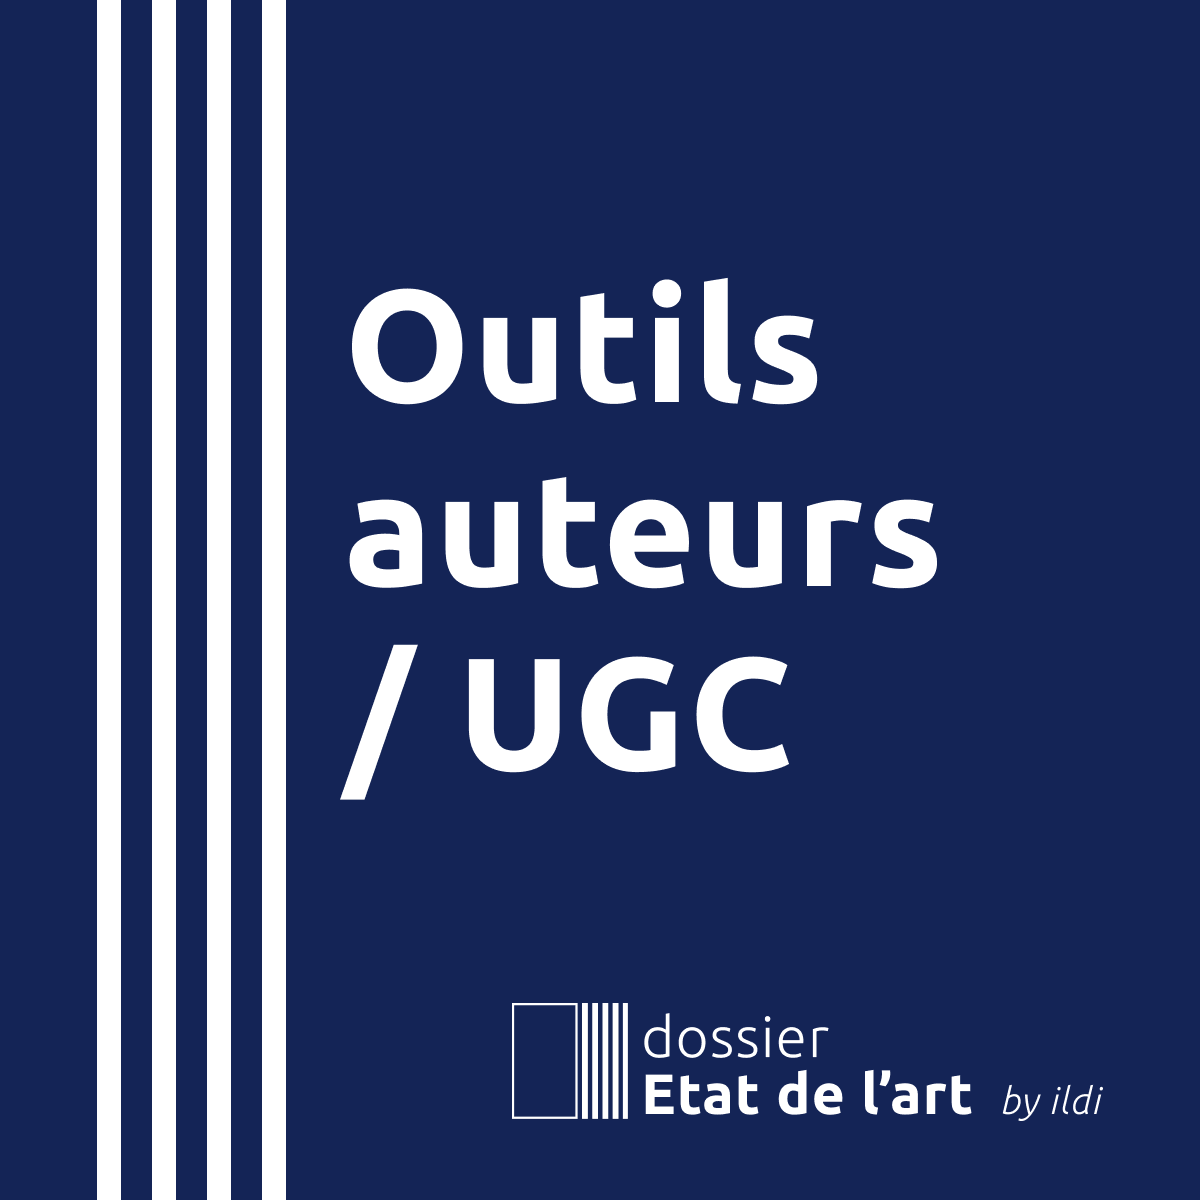 Dossier Etat de l’art “Outils auteur / UGC” (novembre 2022)